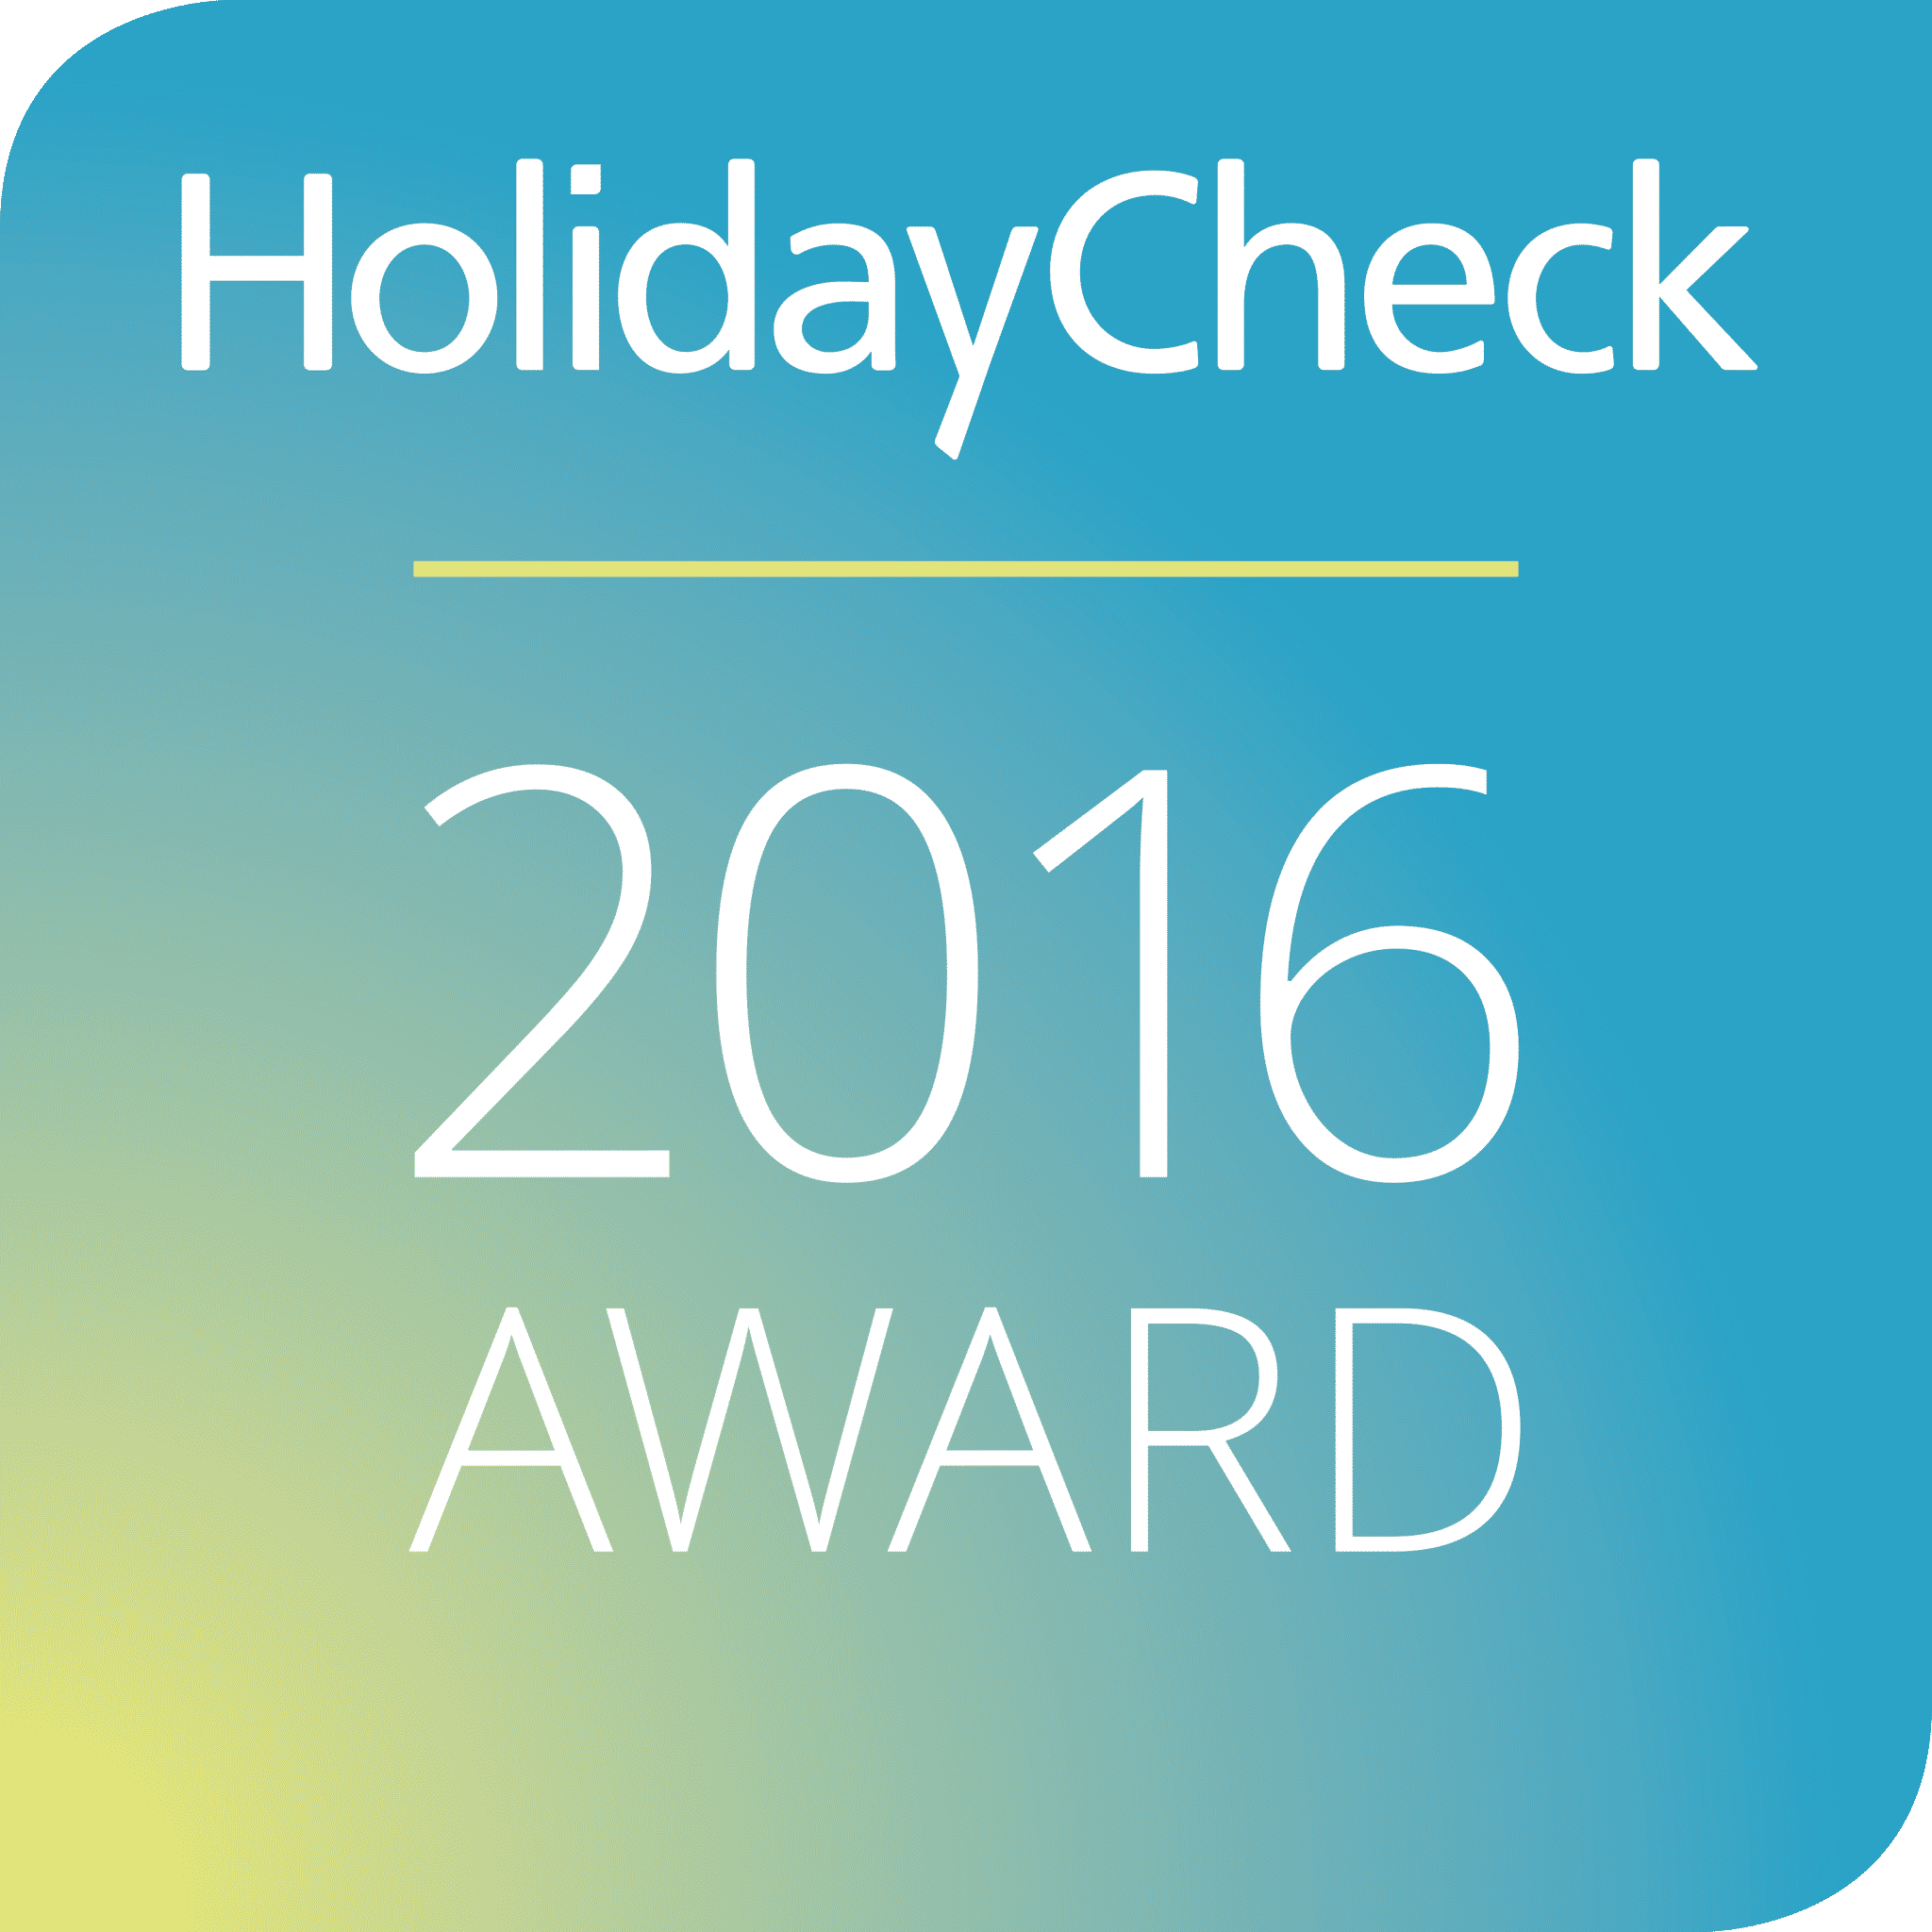 HolidayCheck Award 2016